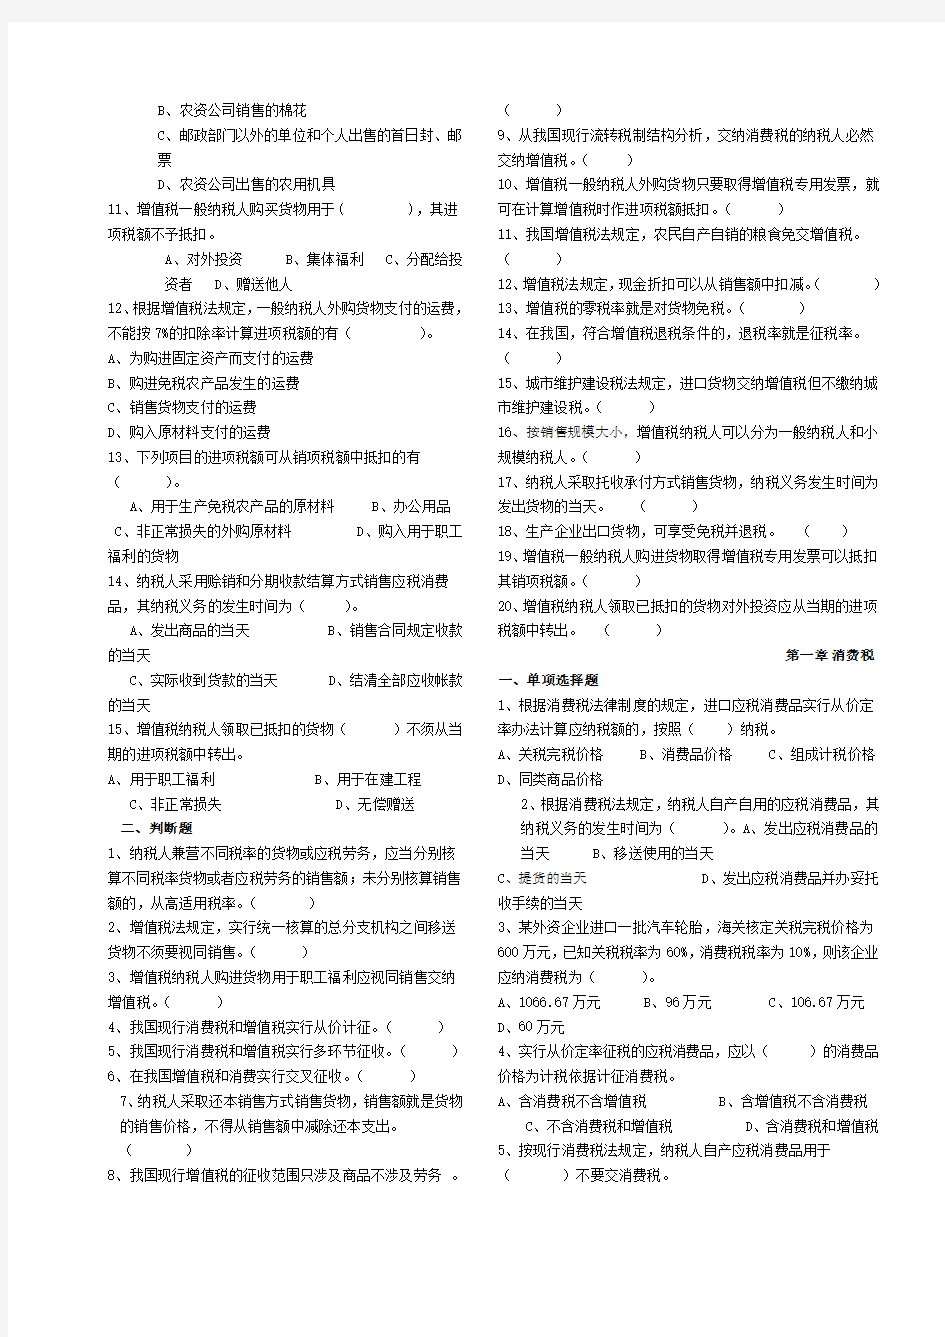 《中国税制》习题库(供参考)